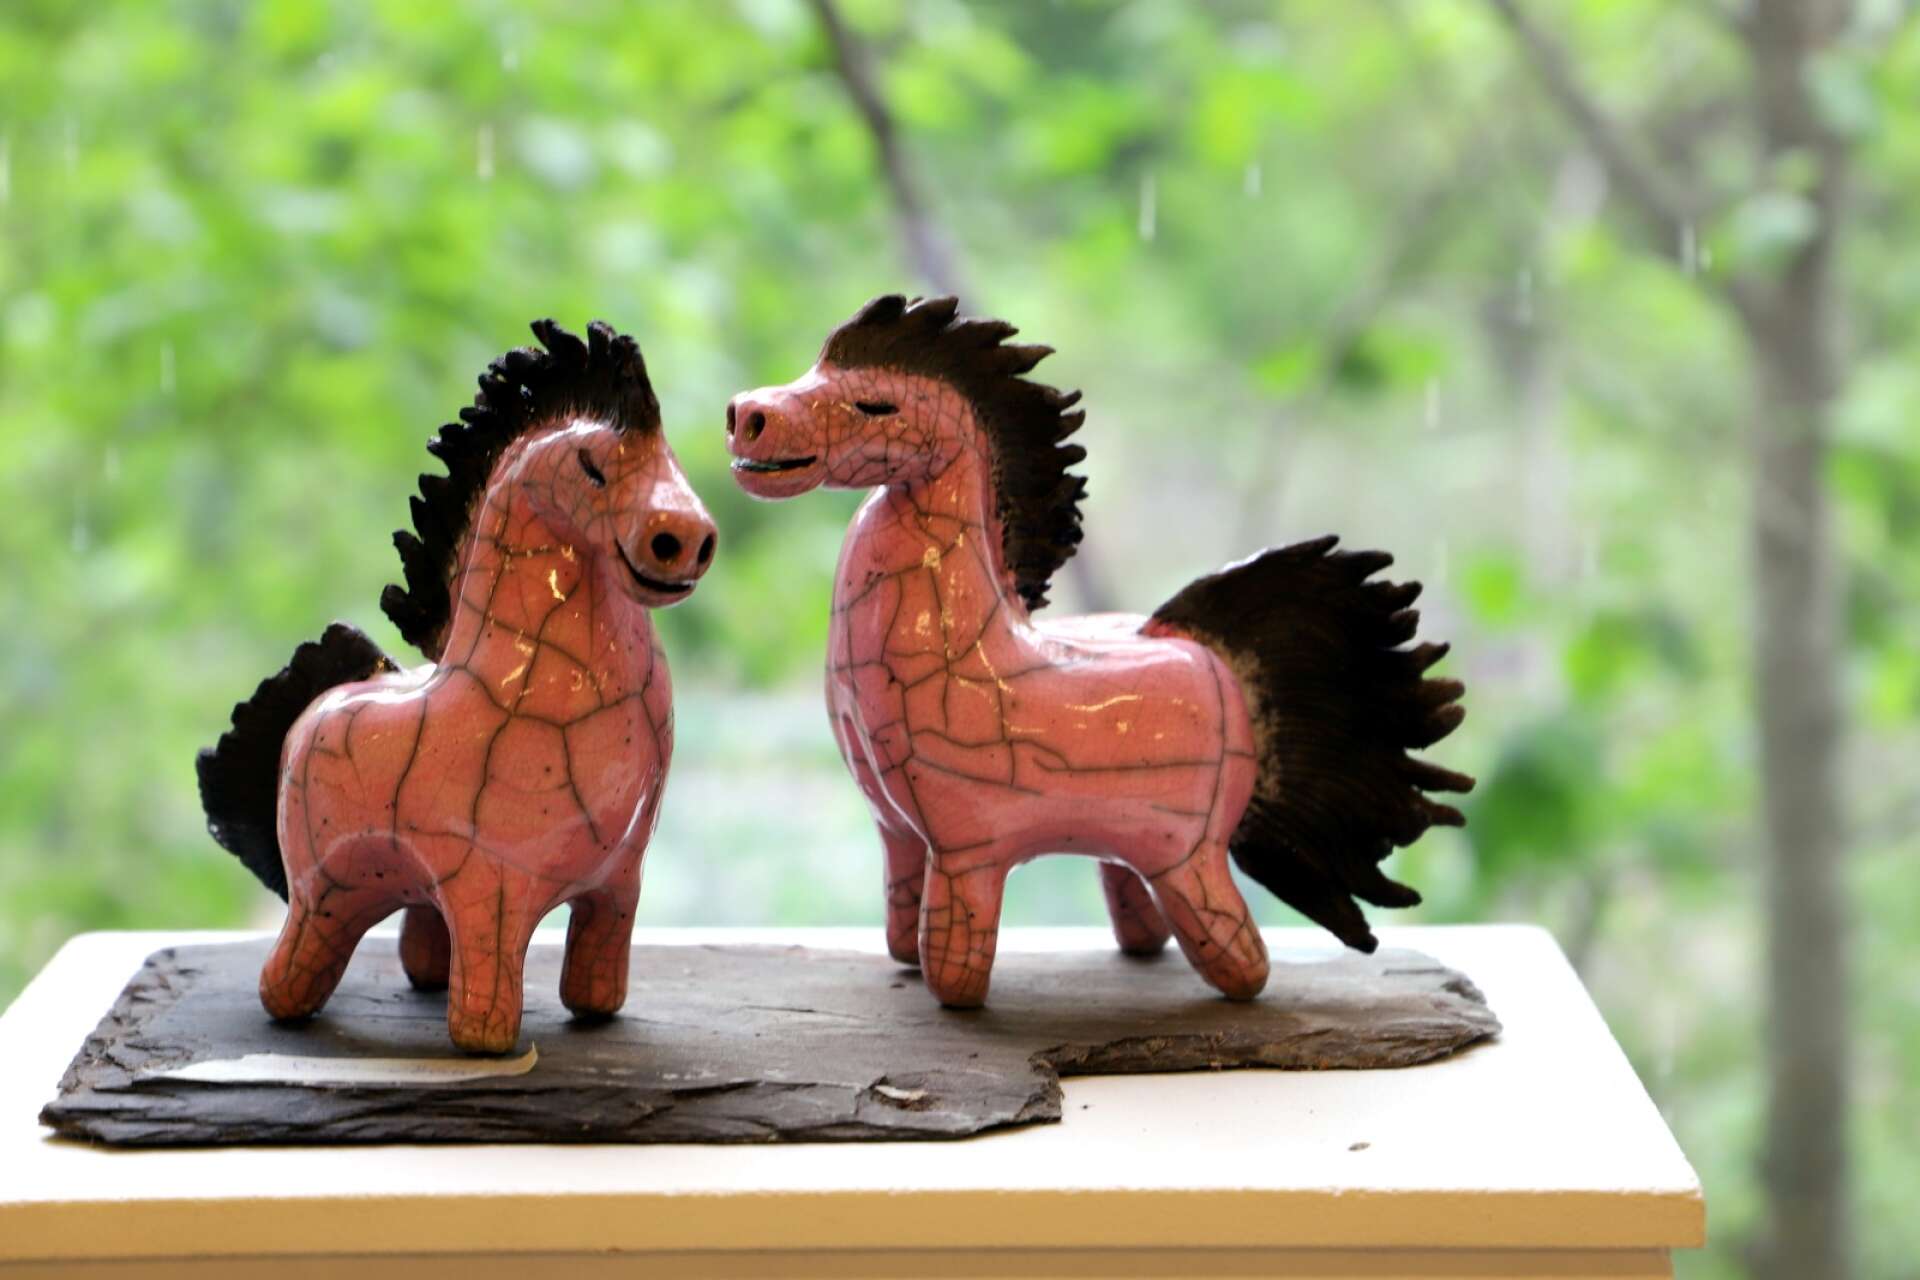 Rosa hästar i raku-keramik av Mia Jansson.